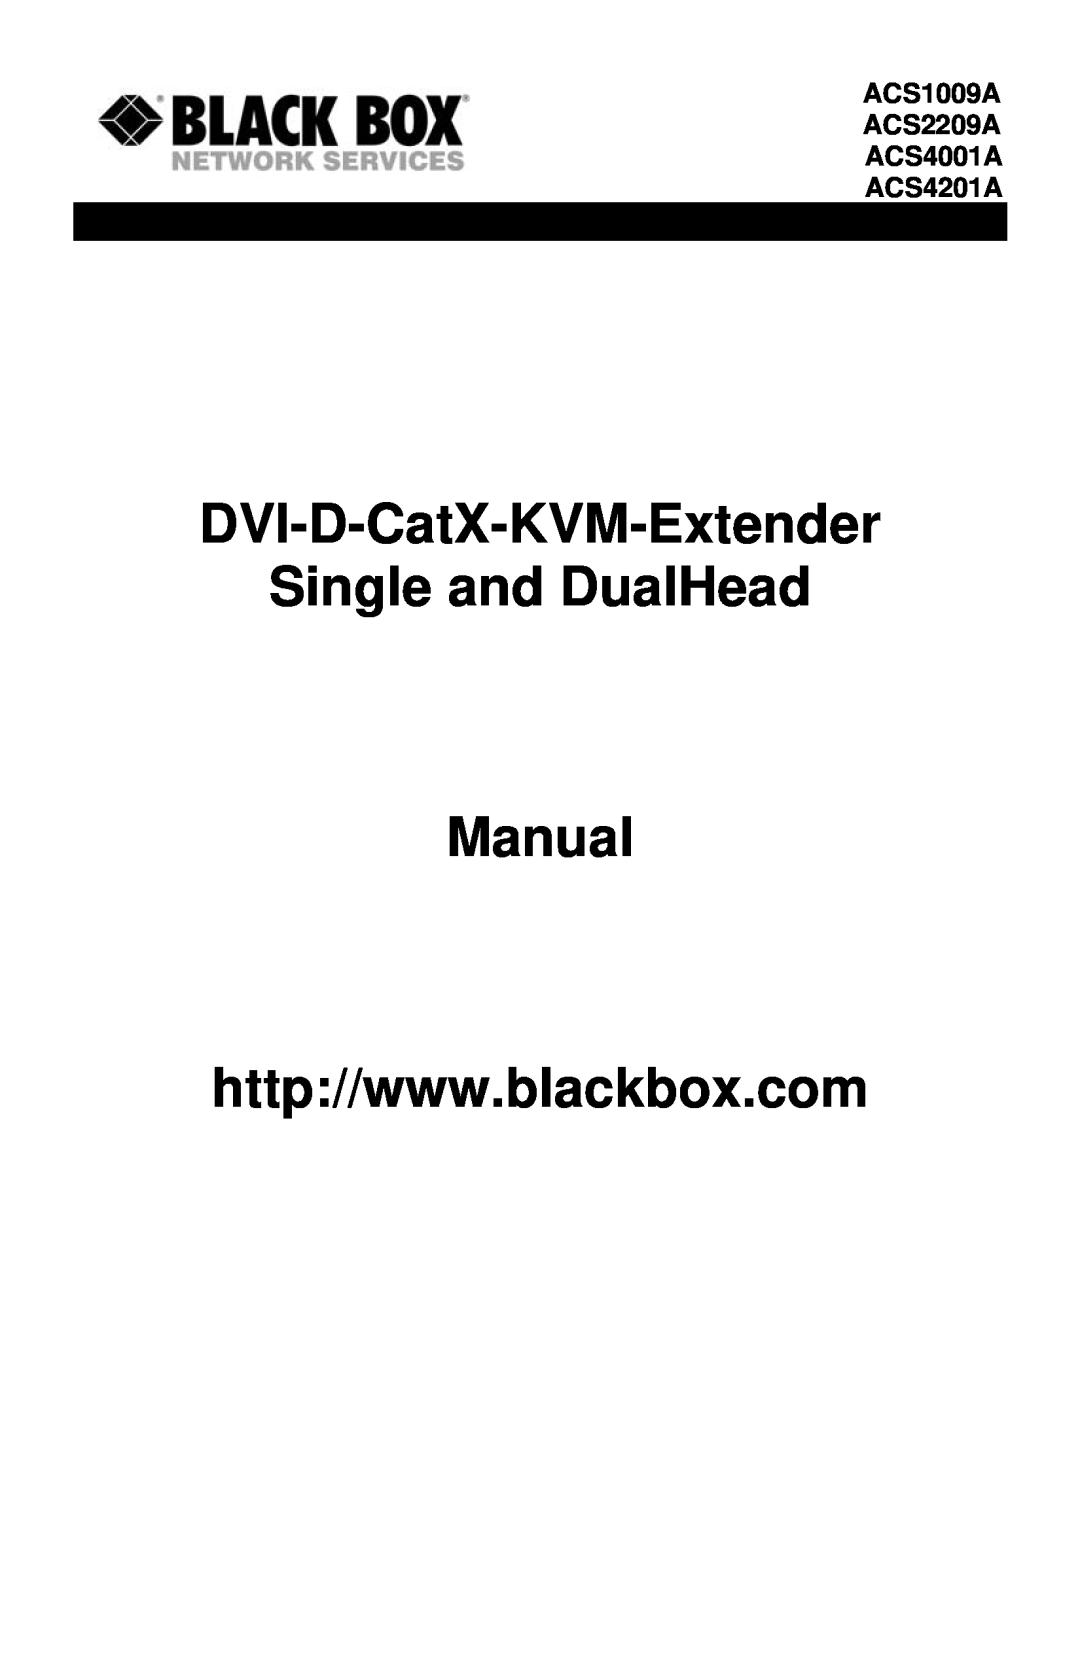 Black Box manual DVI-D-CatX-KVM-Extender Single and DualHead, ACS1009A ACS2209A ACS4001A ACS4201A 